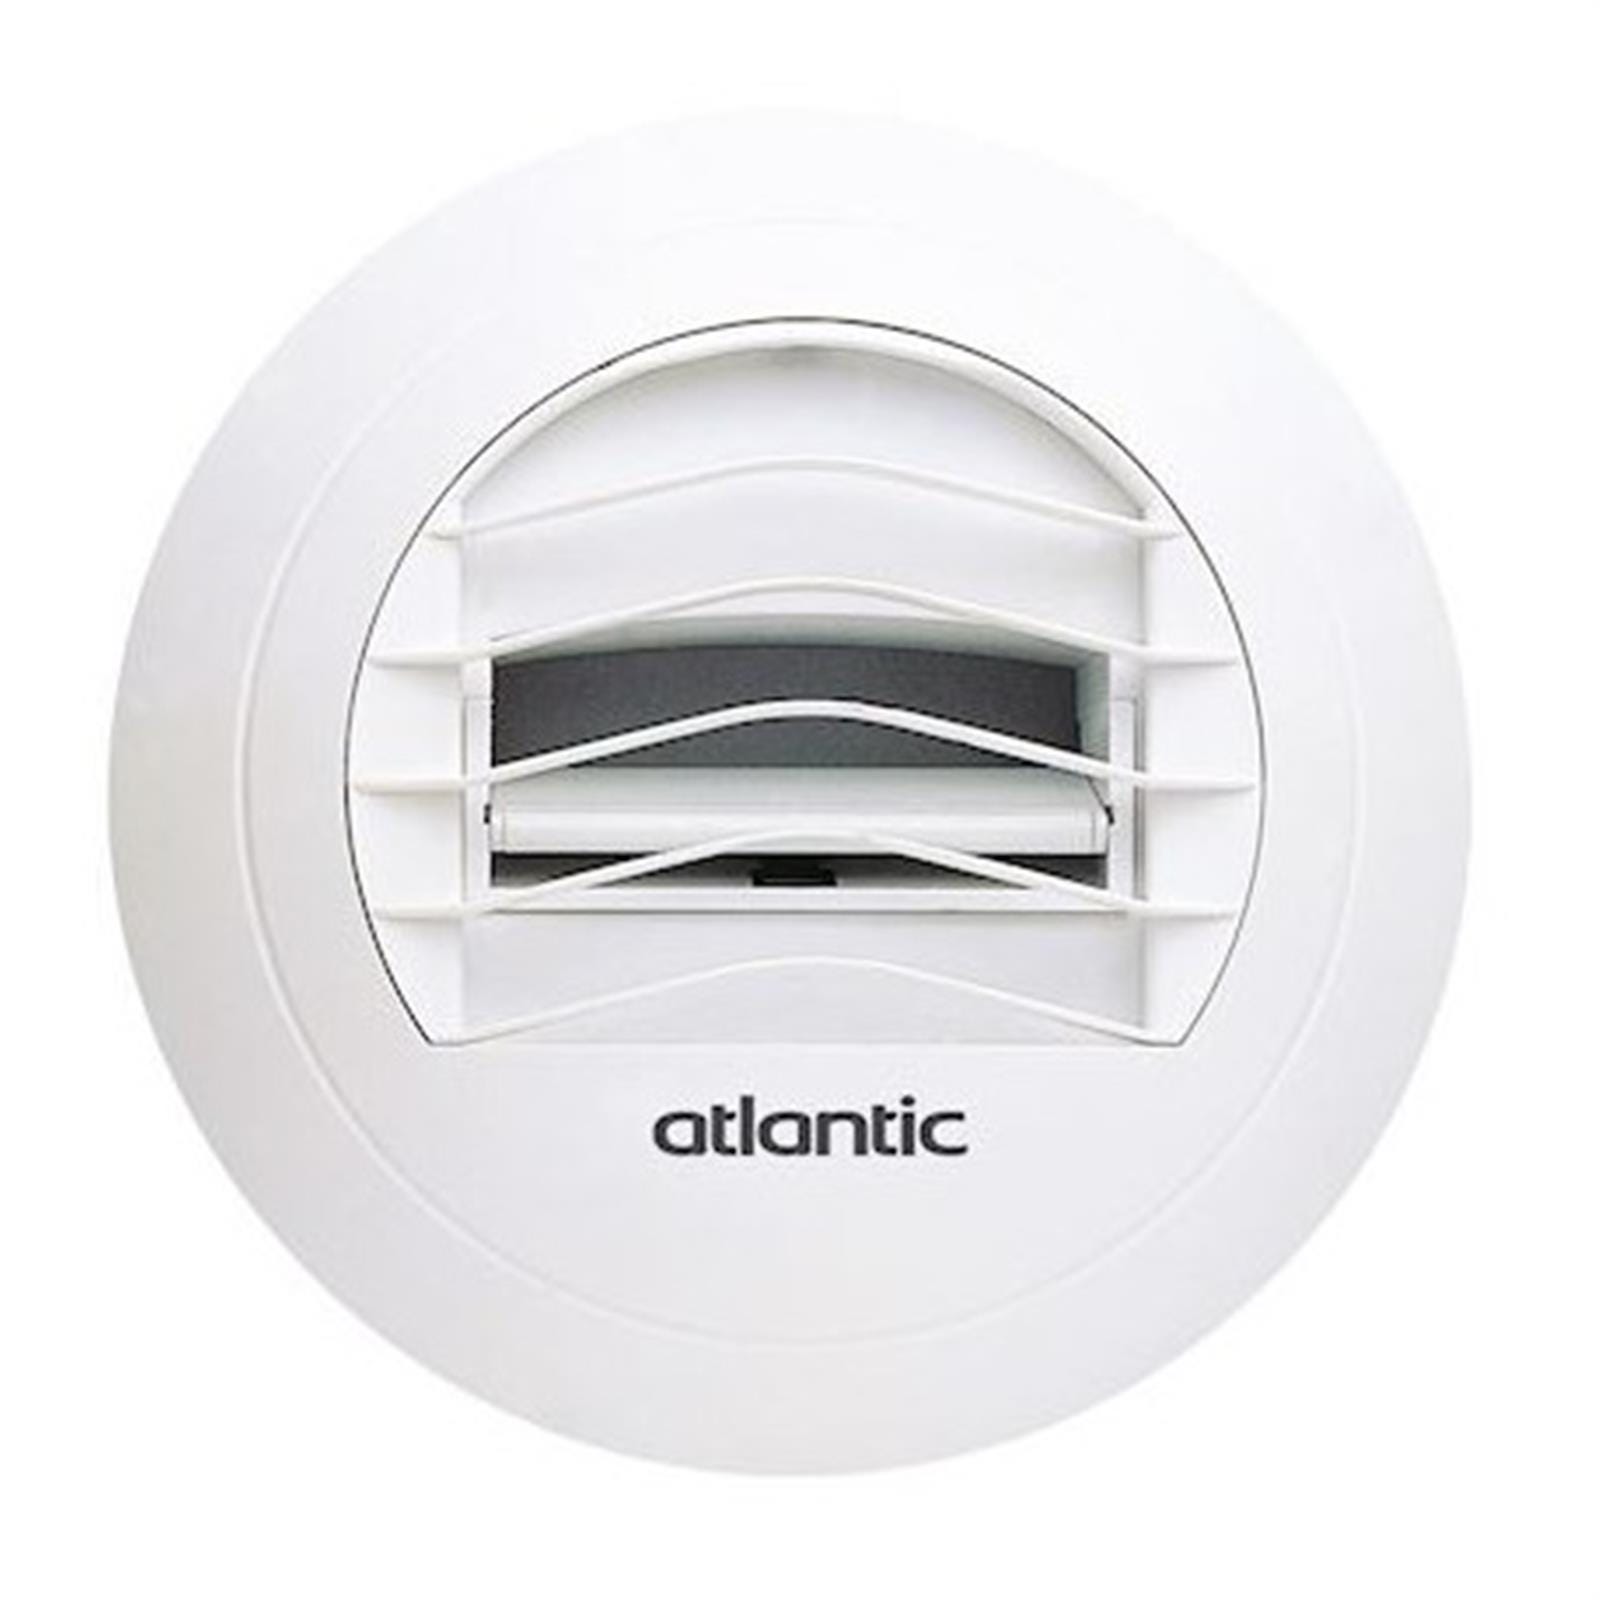 AUTOGYRE - Bouche VMC ventilation sanitaire manchette cloison blanc L. 100  mm diamètre 80 mm